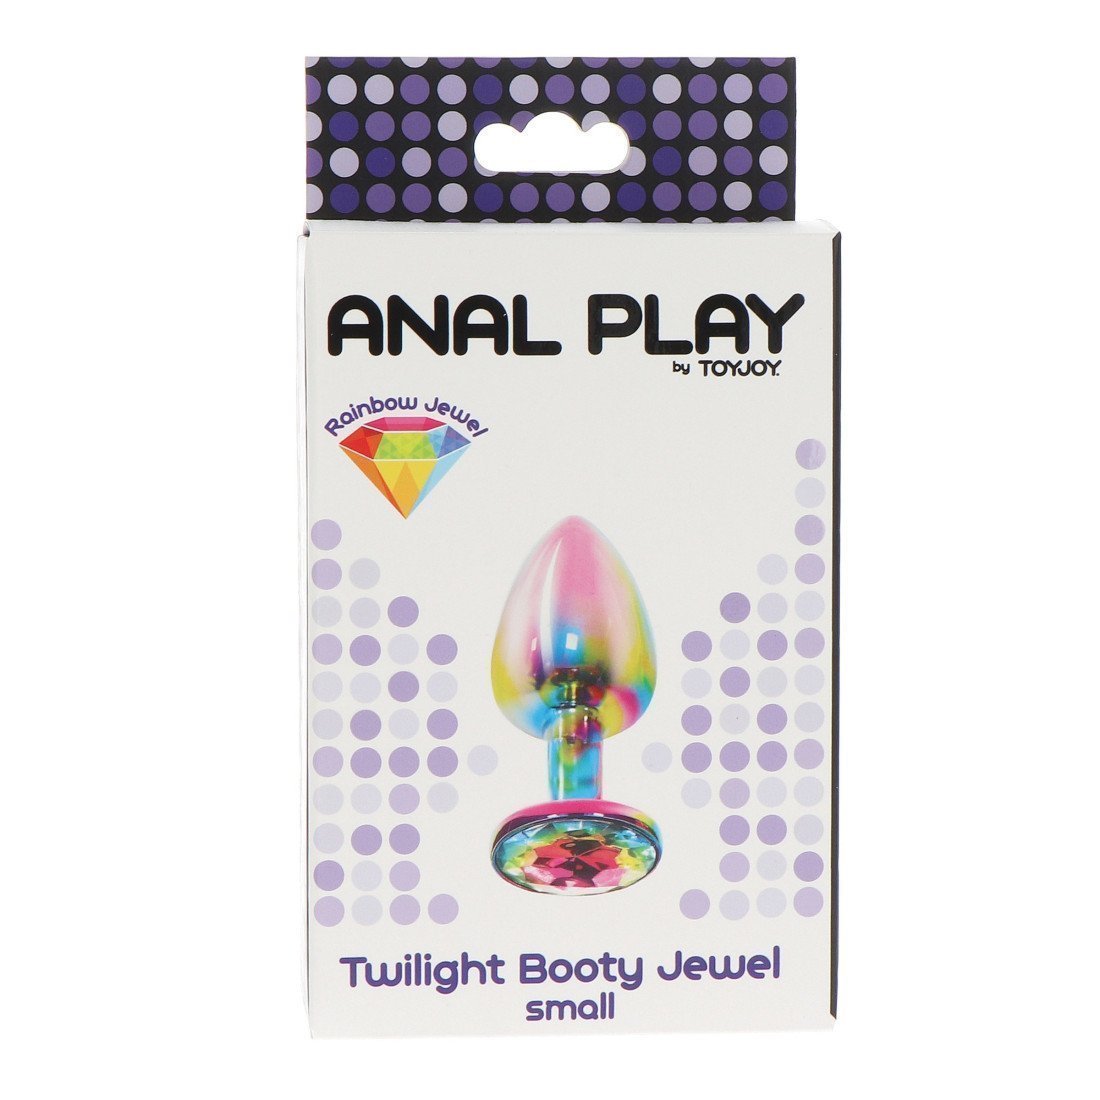 Mažas analinis kaištis „Twilight Booty Jewel“ - ToyJoy